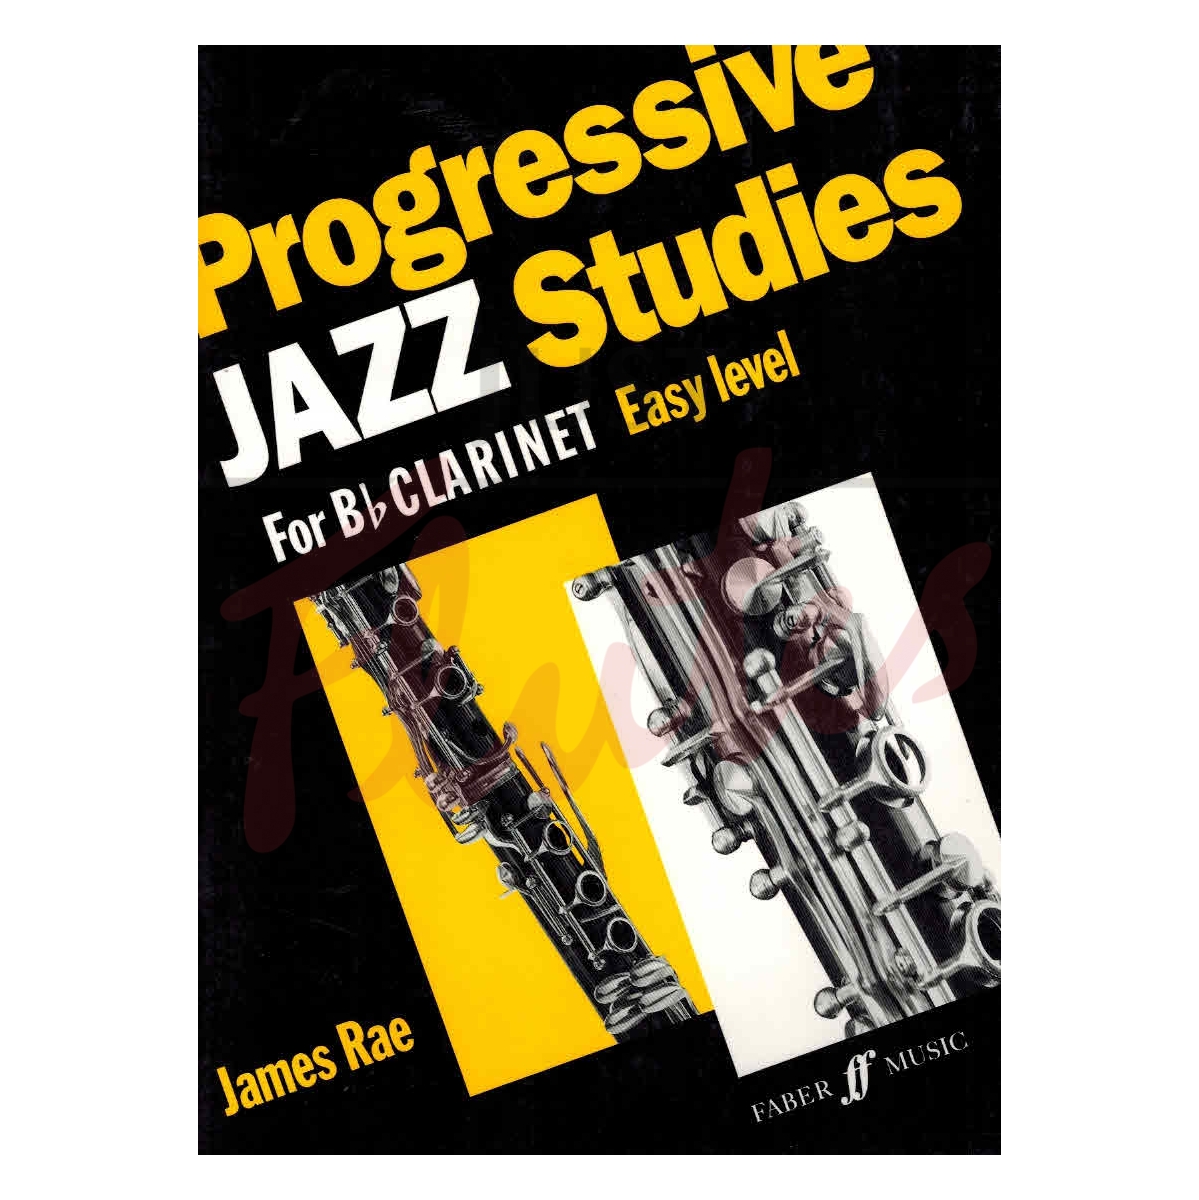 Progressive Jazz Studies for Clarinet: Easy Level